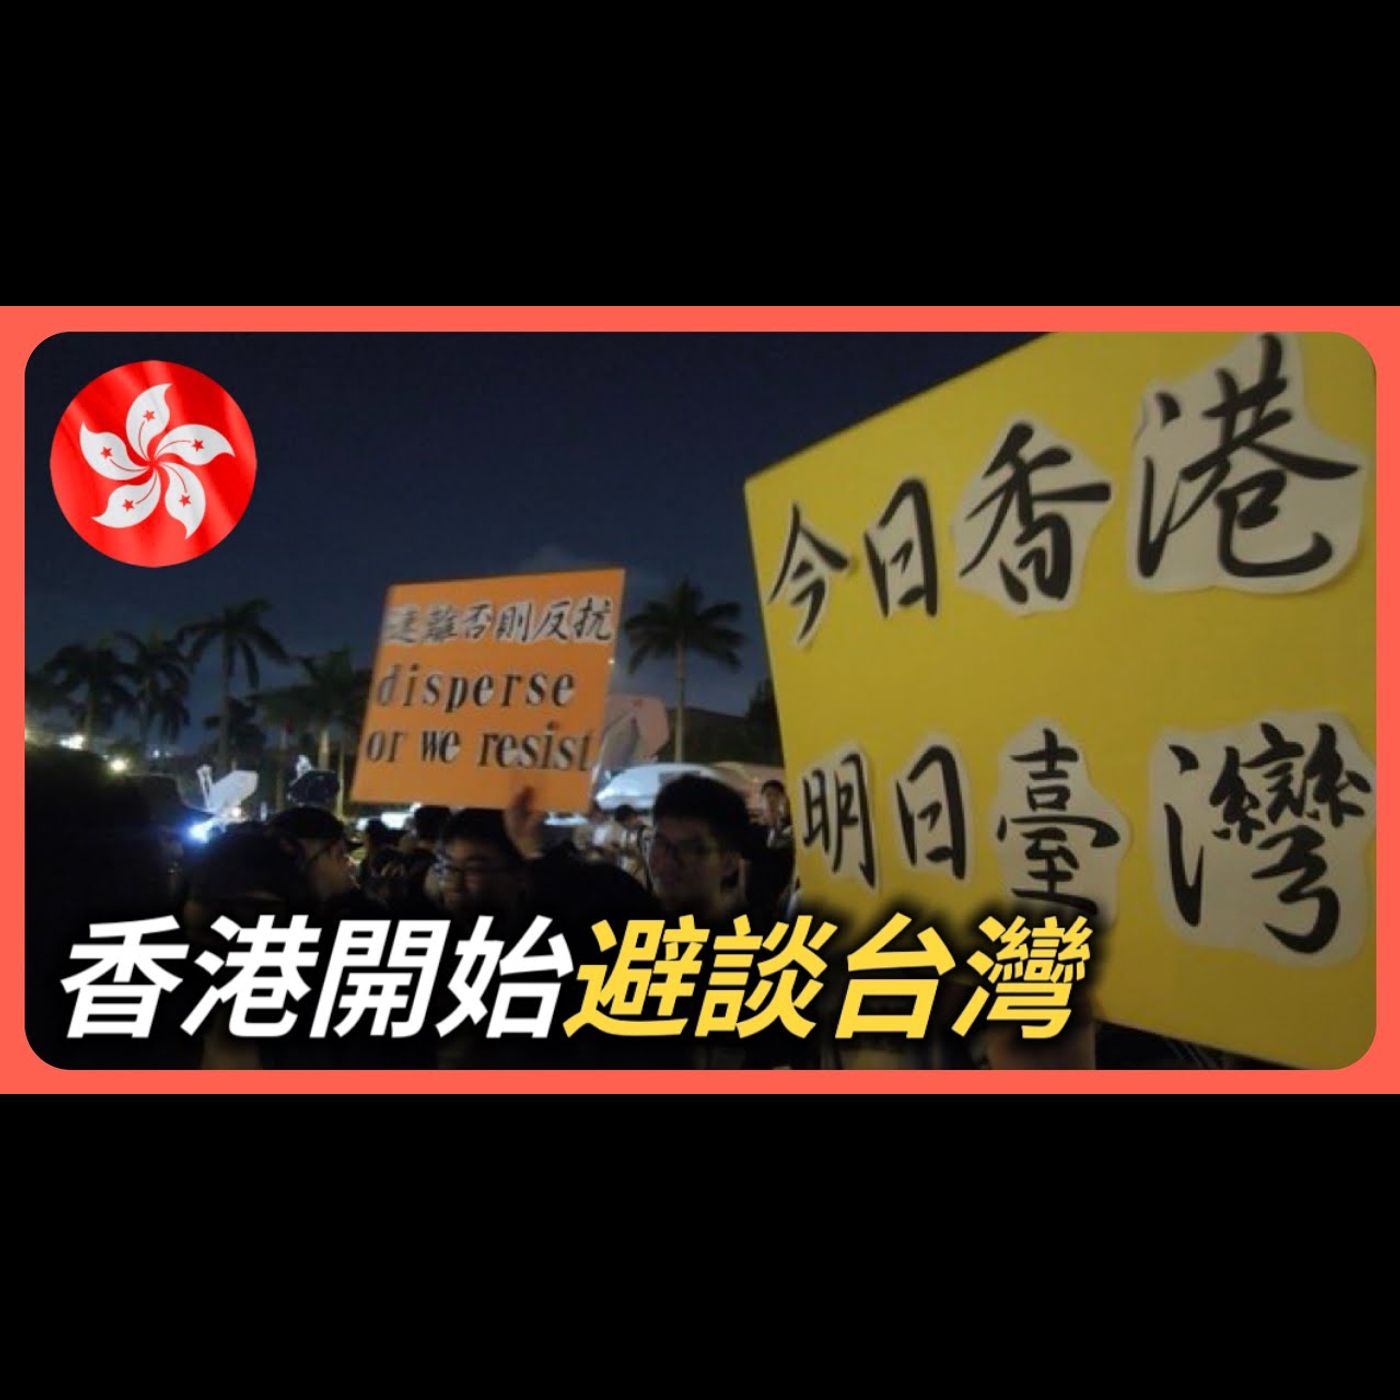 香港人開始避談政治⋯⋯​⁠@BBC記者香港街頭採訪遭「避之不及」⋯⋯